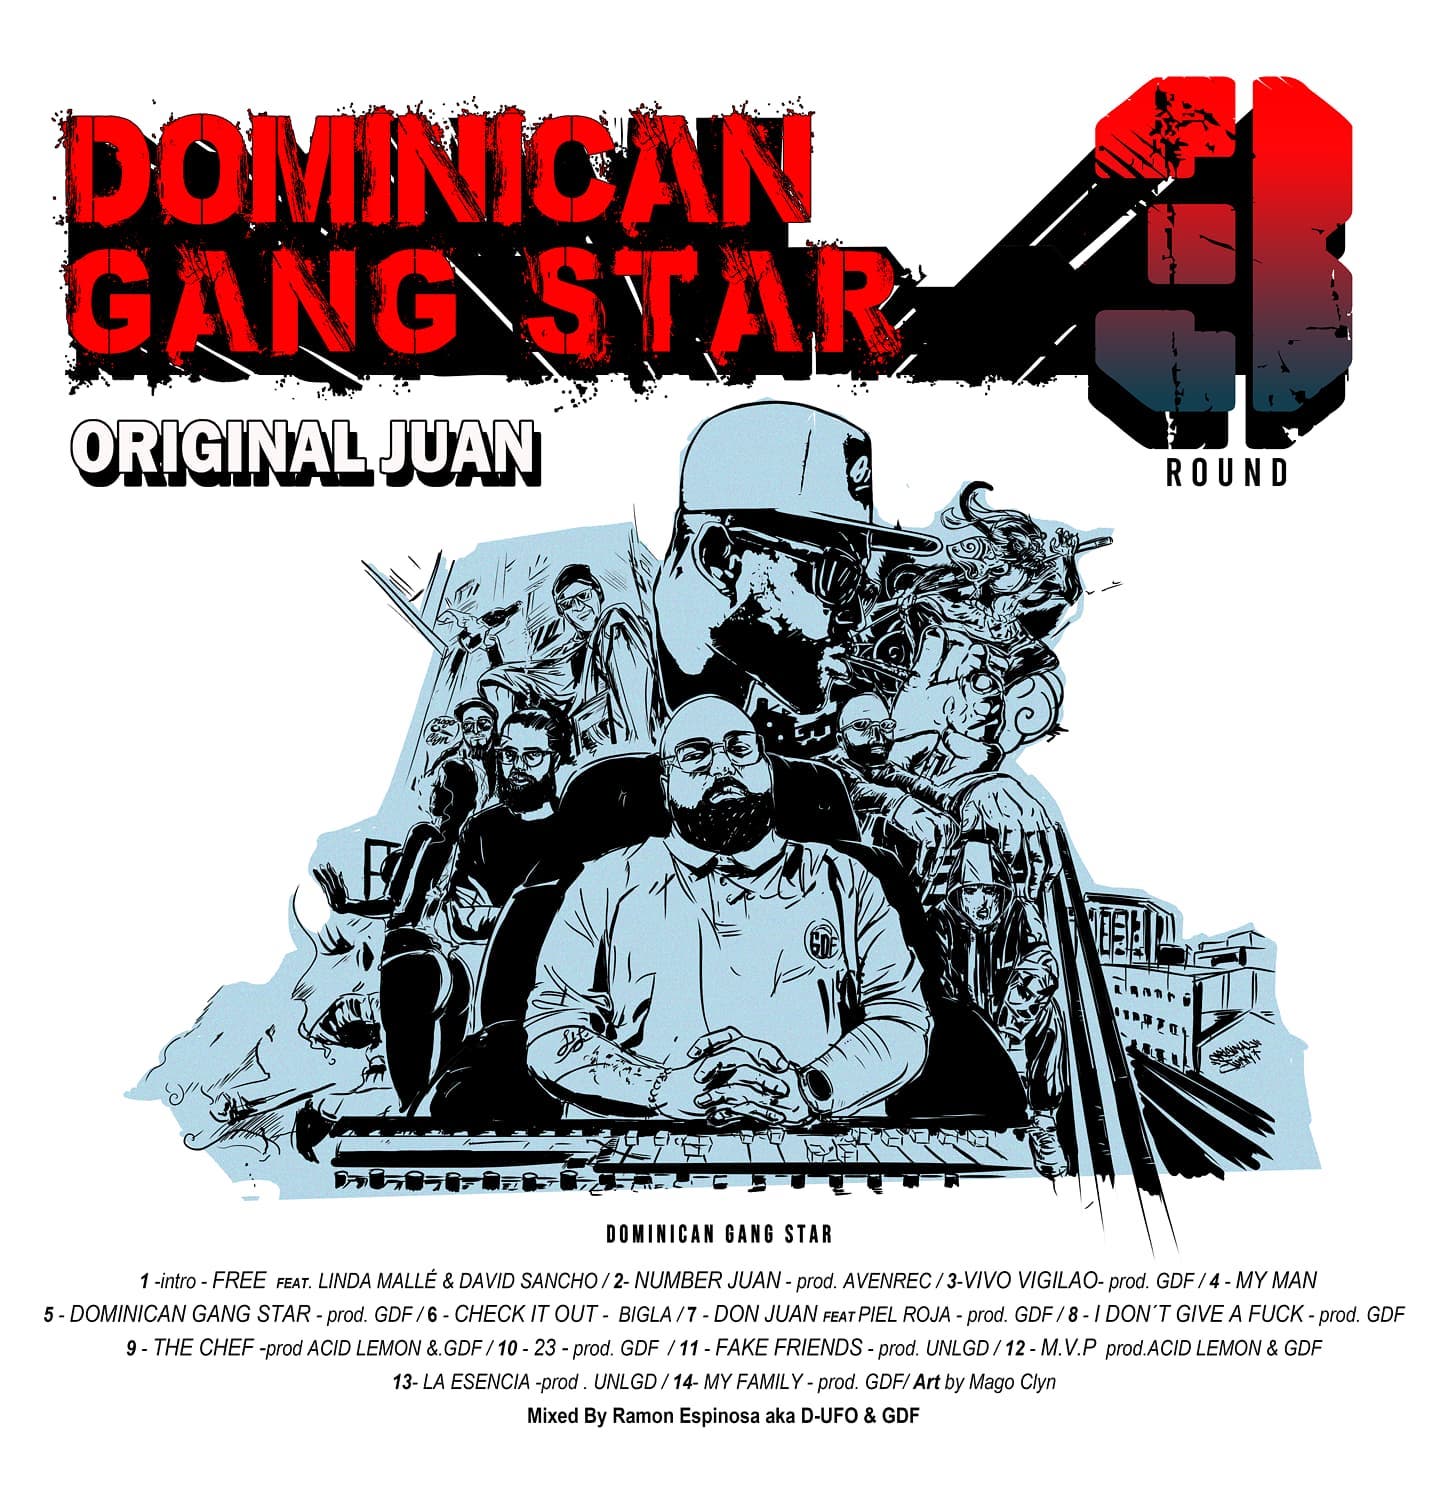 Dominican_gang_star_original_juan